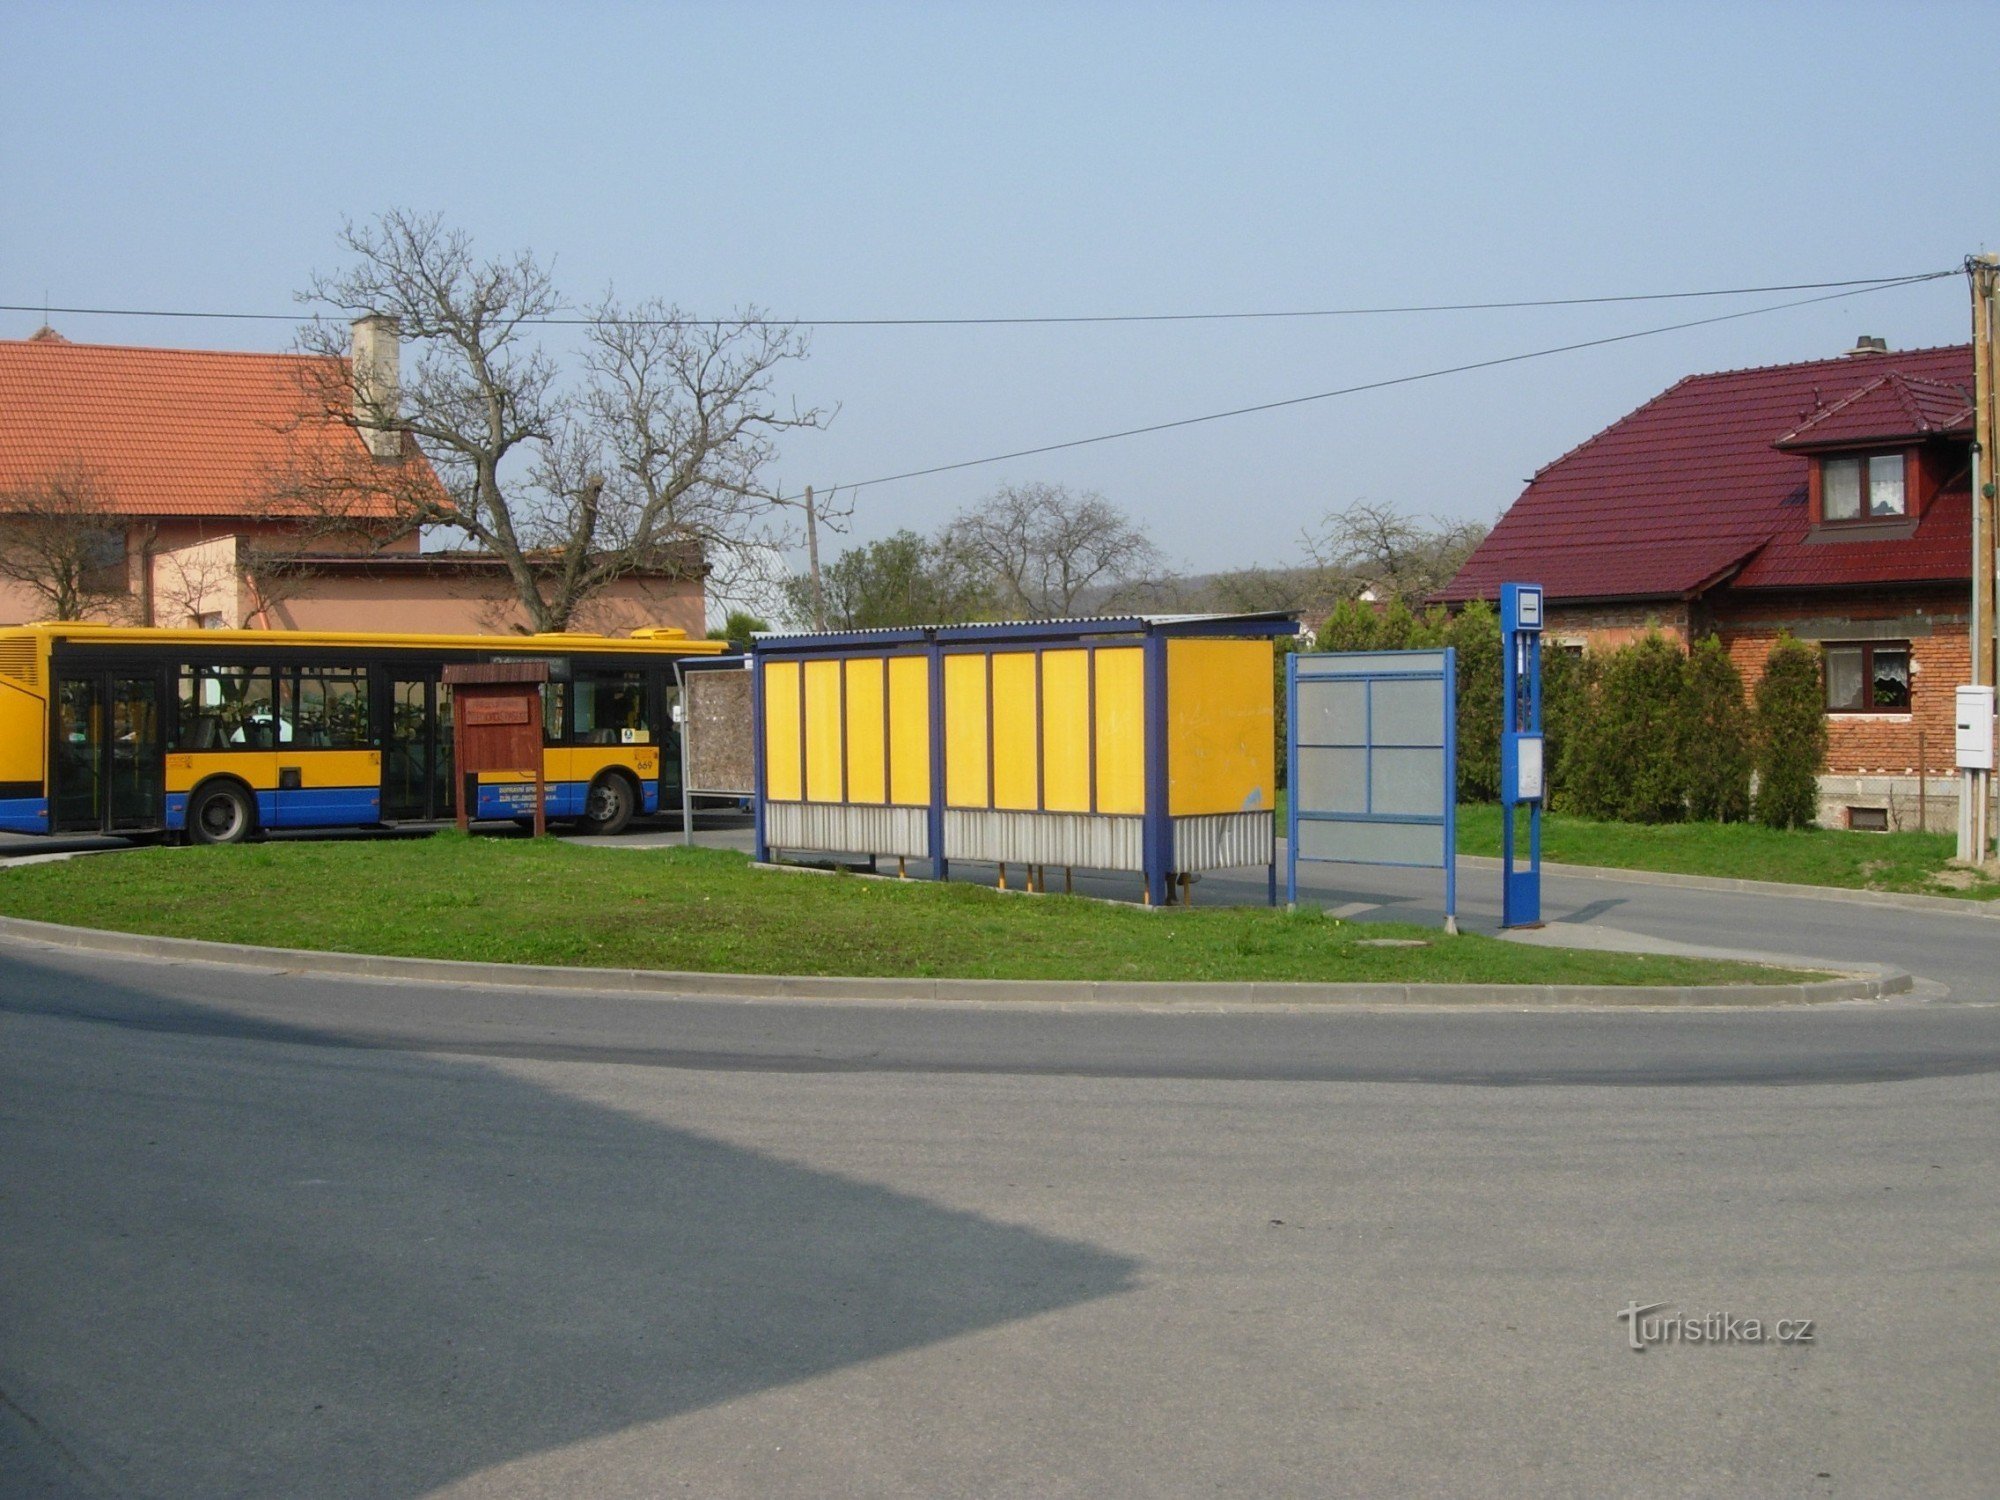 Turnpike w Jarosławicach, początek trasy